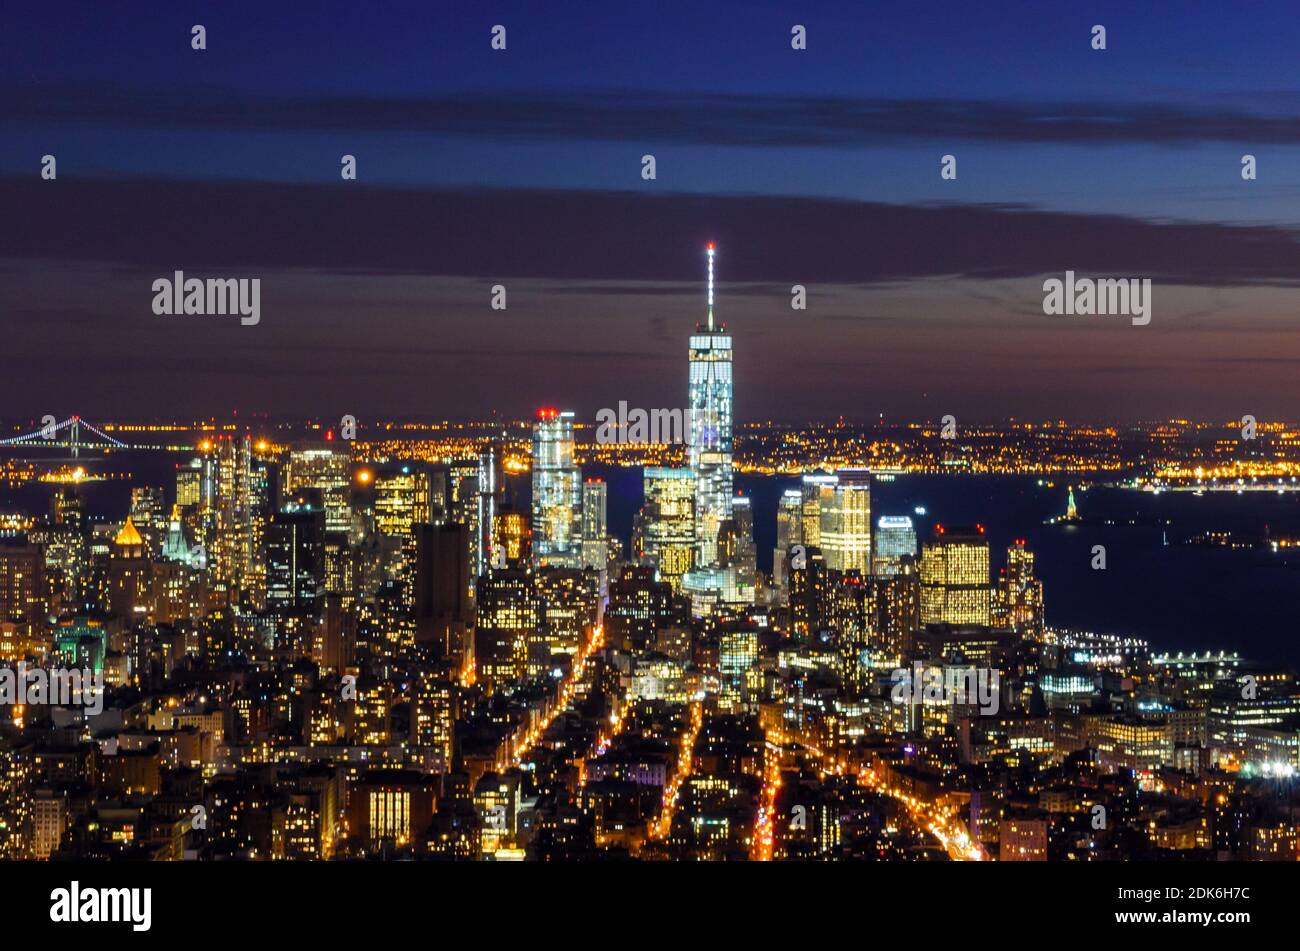 Vue panoramique et aérienne à couper le souffle de Manhattan, New York, la nuit. Beaux bâtiments illuminés futuristes. Tour de la liberté, Lady Liberty Banque D'Images